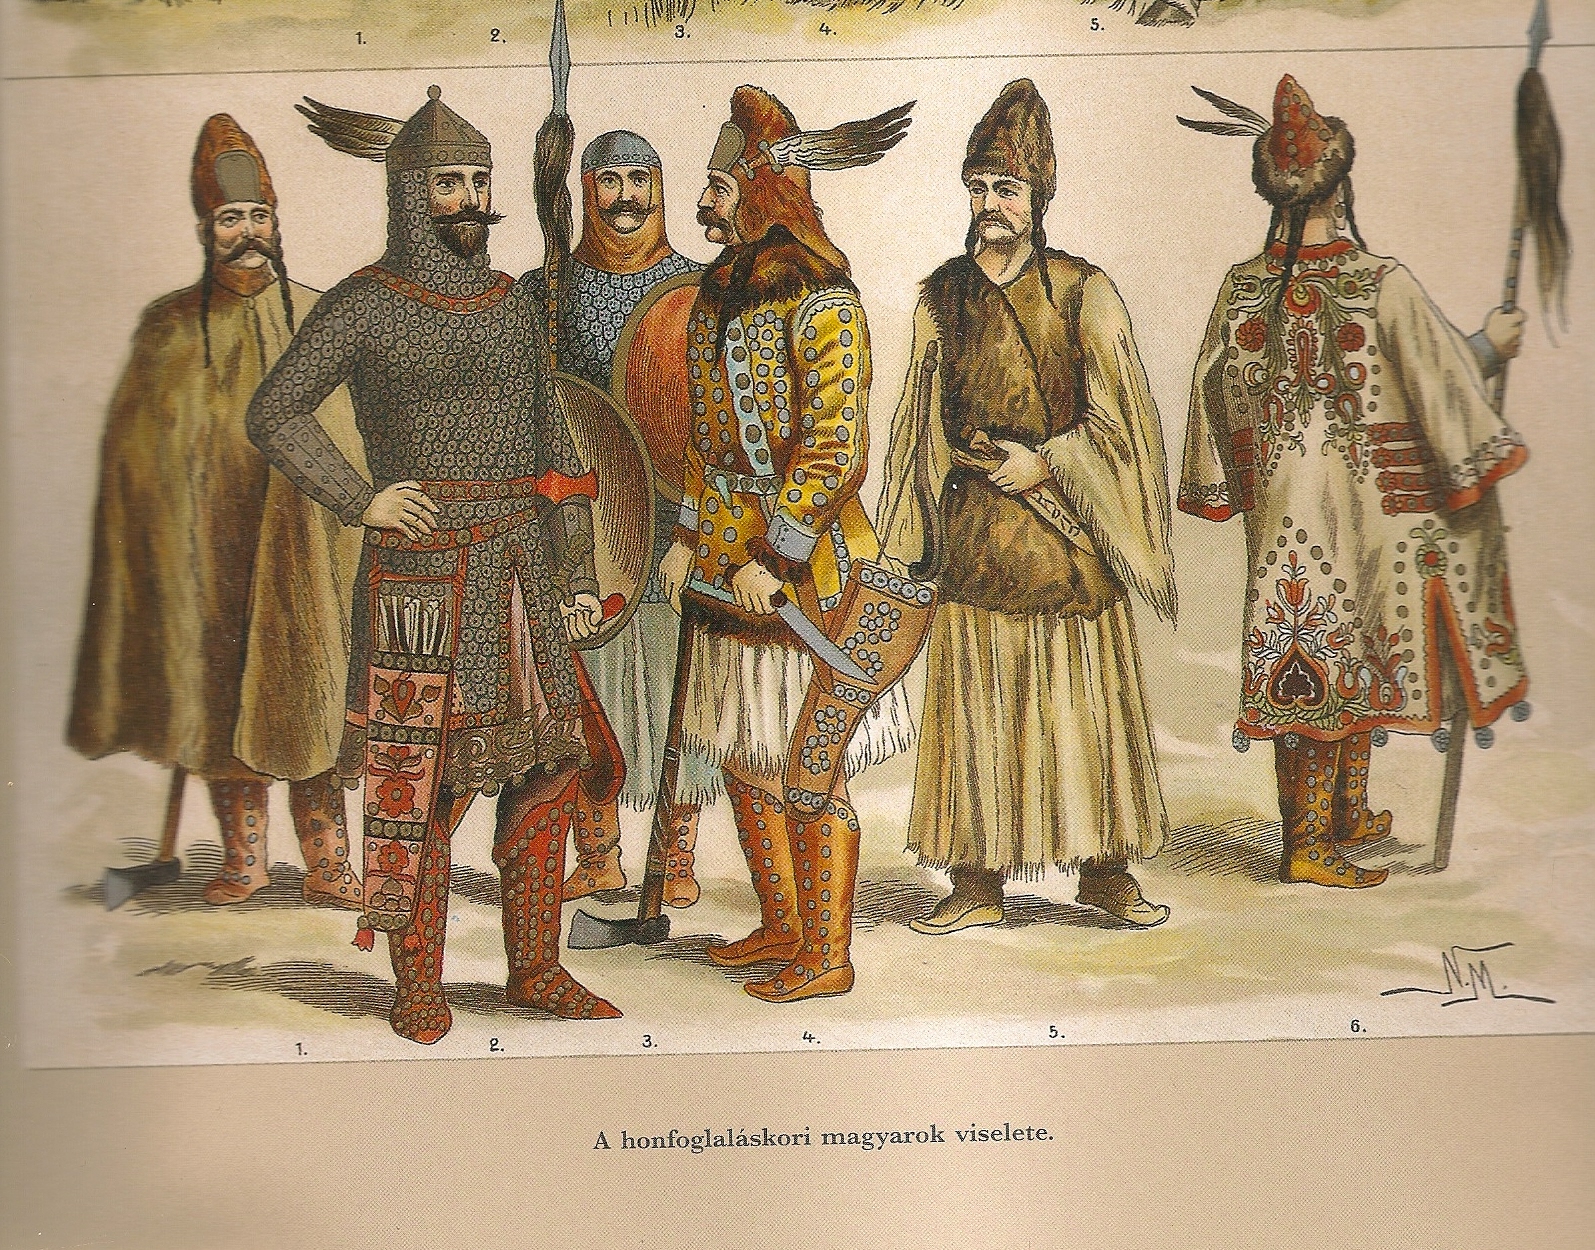 Половцы племя. Венгры мадьяры 9 век. Венгры мадьяры 10 век. Угры мадьяры. Мадьяры — угорский народ.